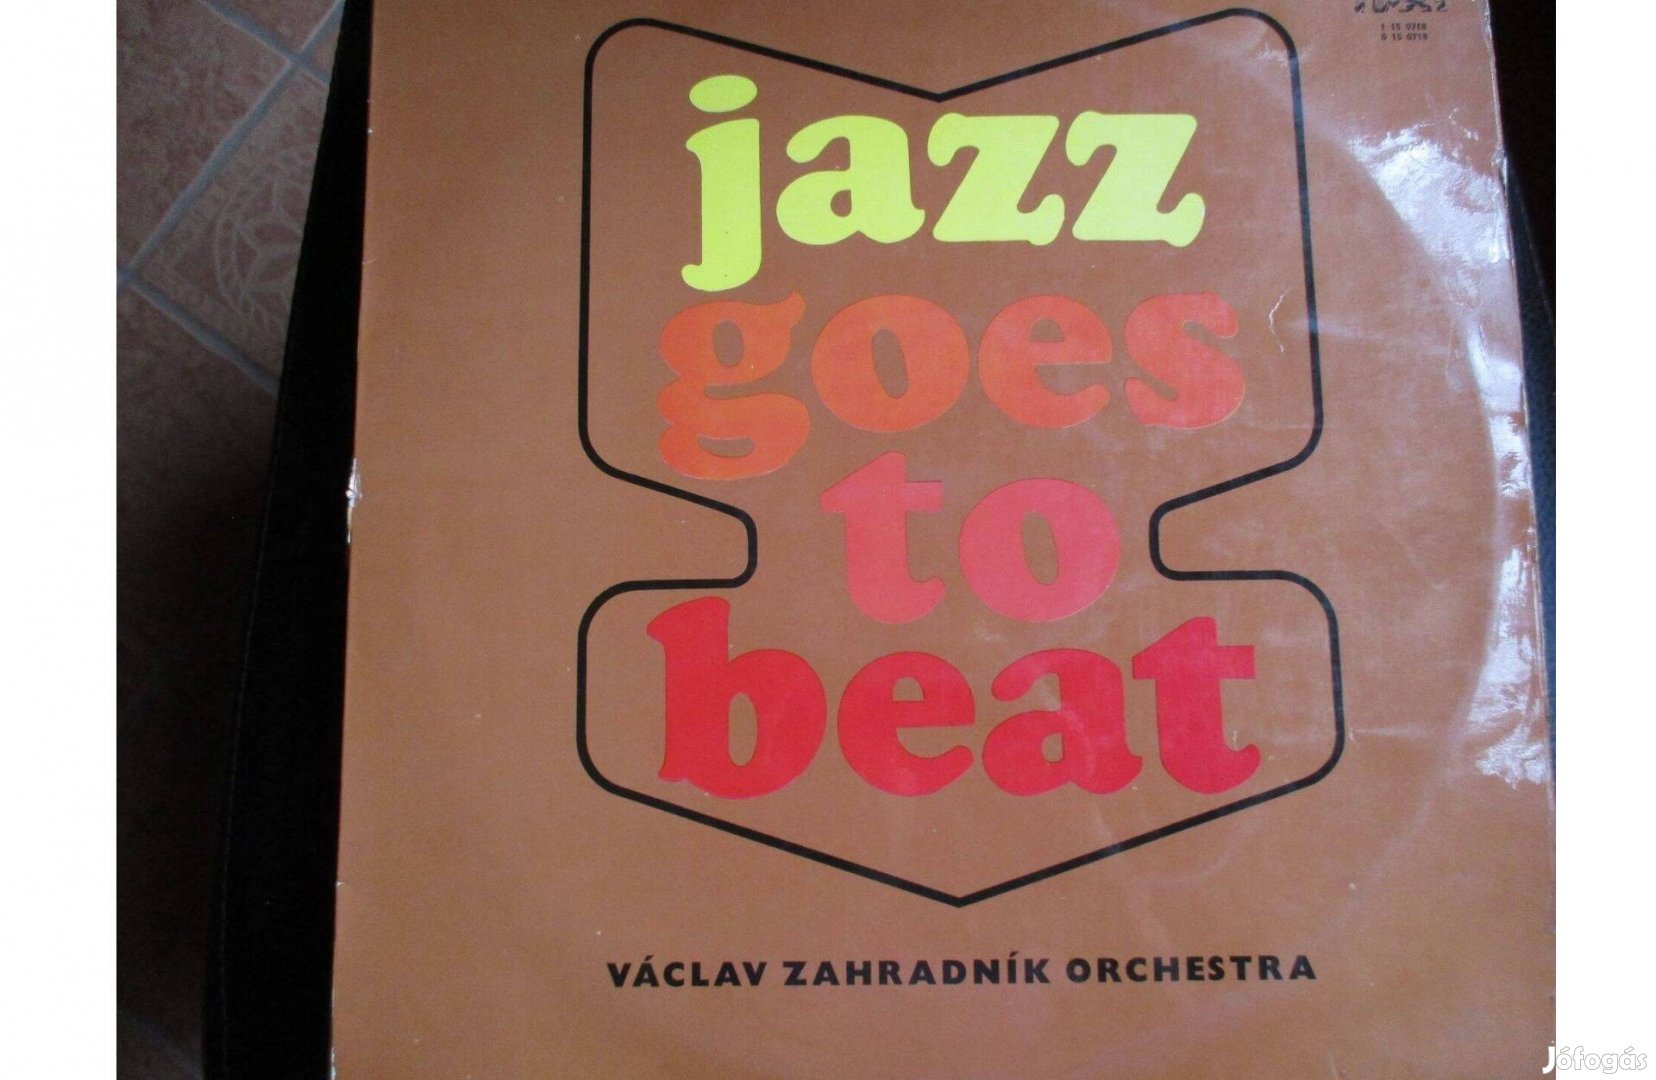 Jazz goes to beat Václav Zahradnik Orchestra bakelit lemez eladó